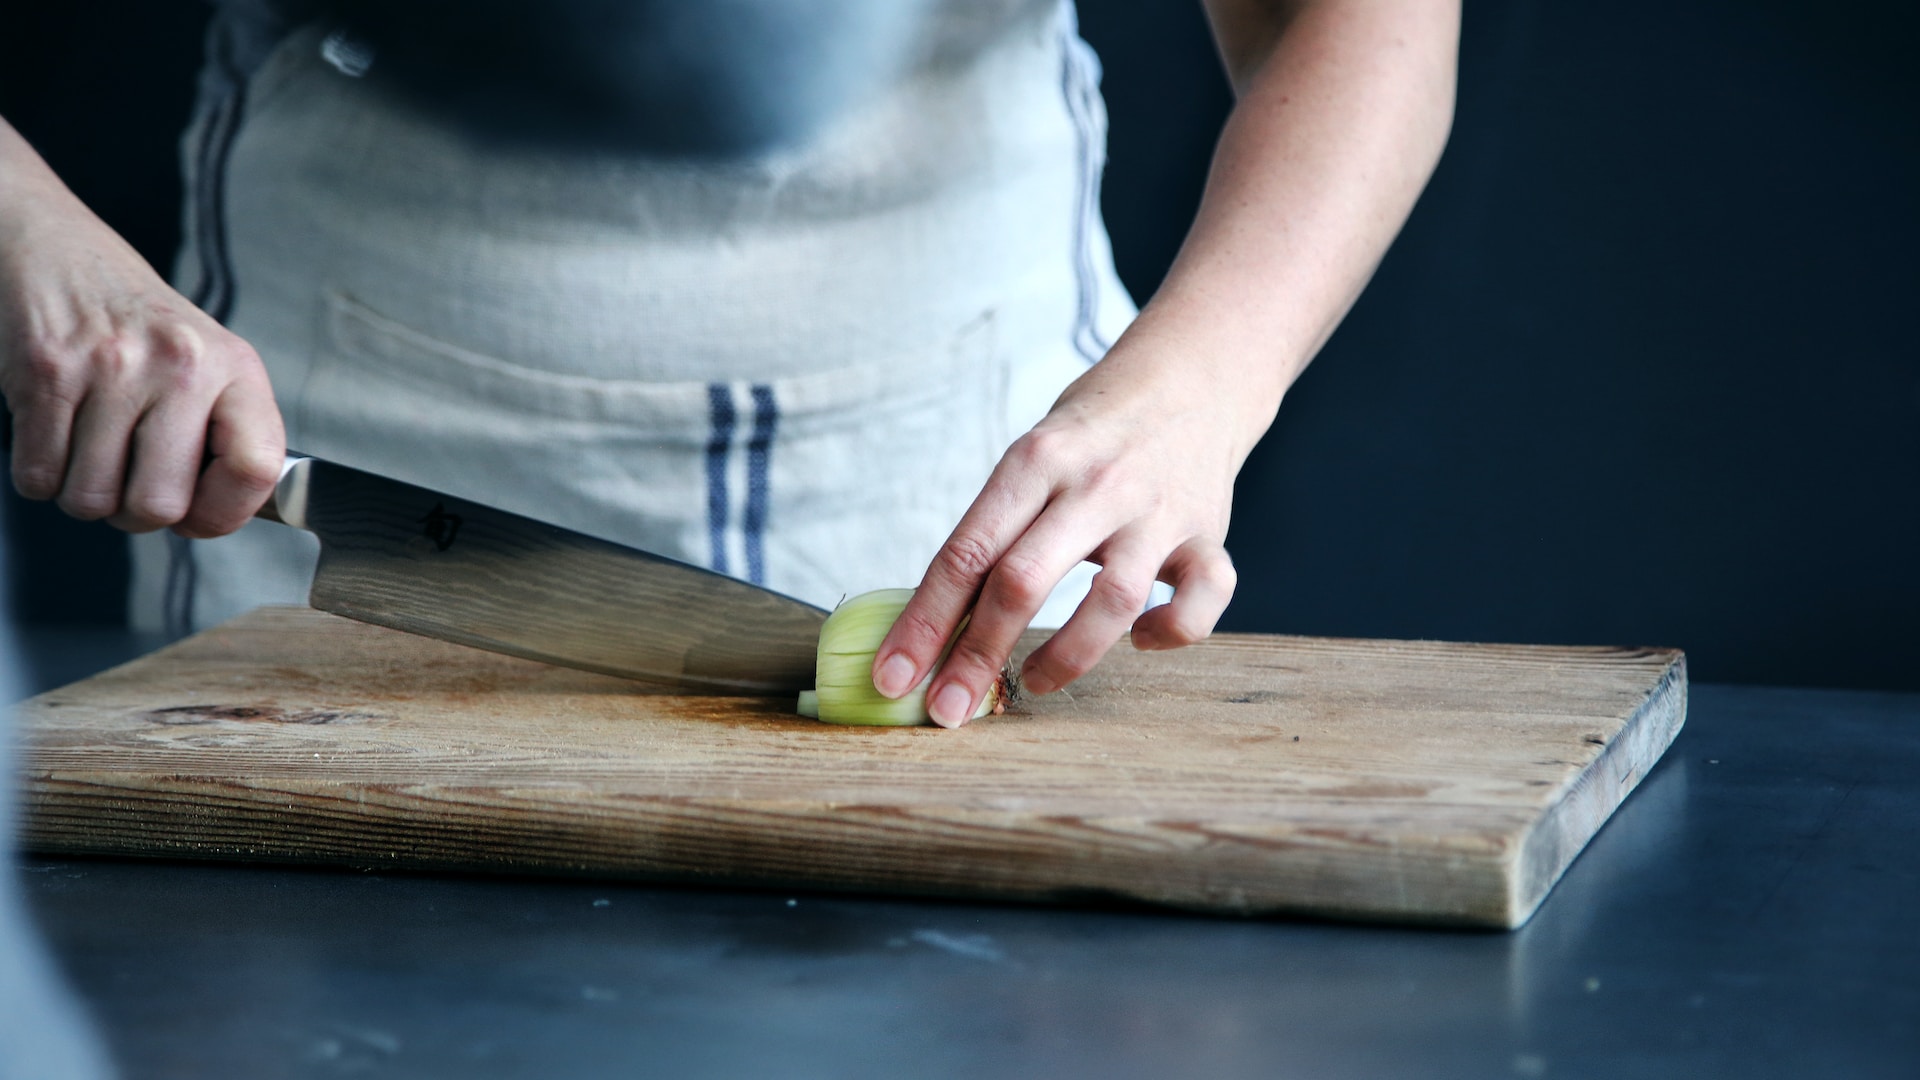 πώς πρέπει να κόβεις το κρεμμύδι